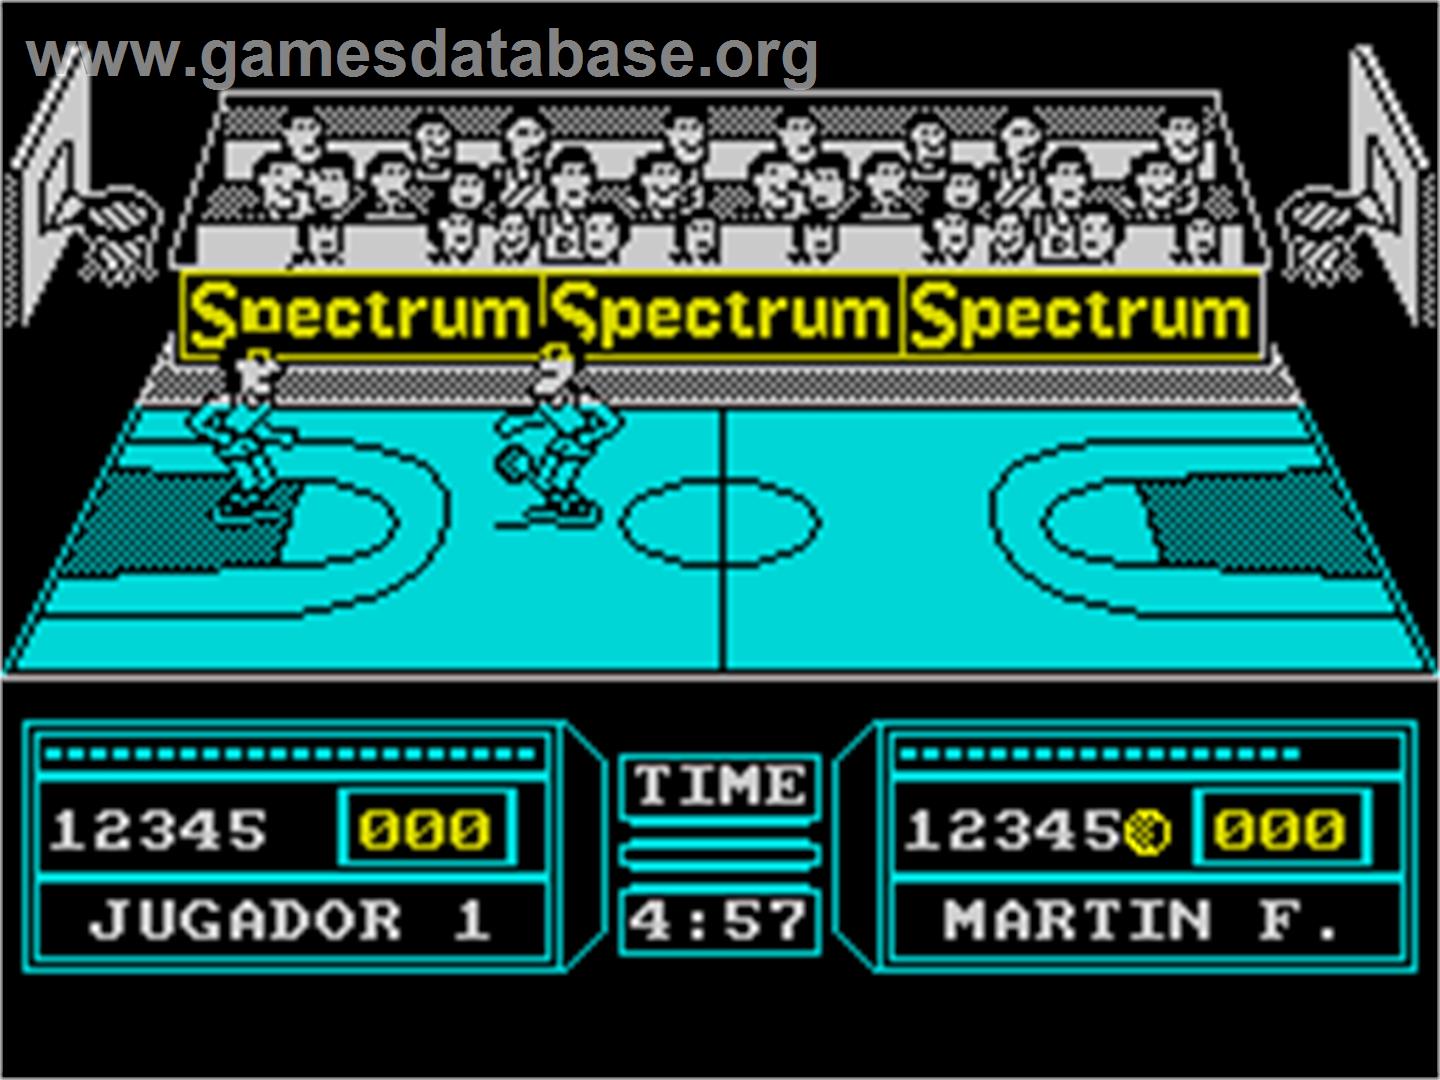 Fernando Martín Basket Master - Sinclair ZX Spectrum - Artwork - In Game